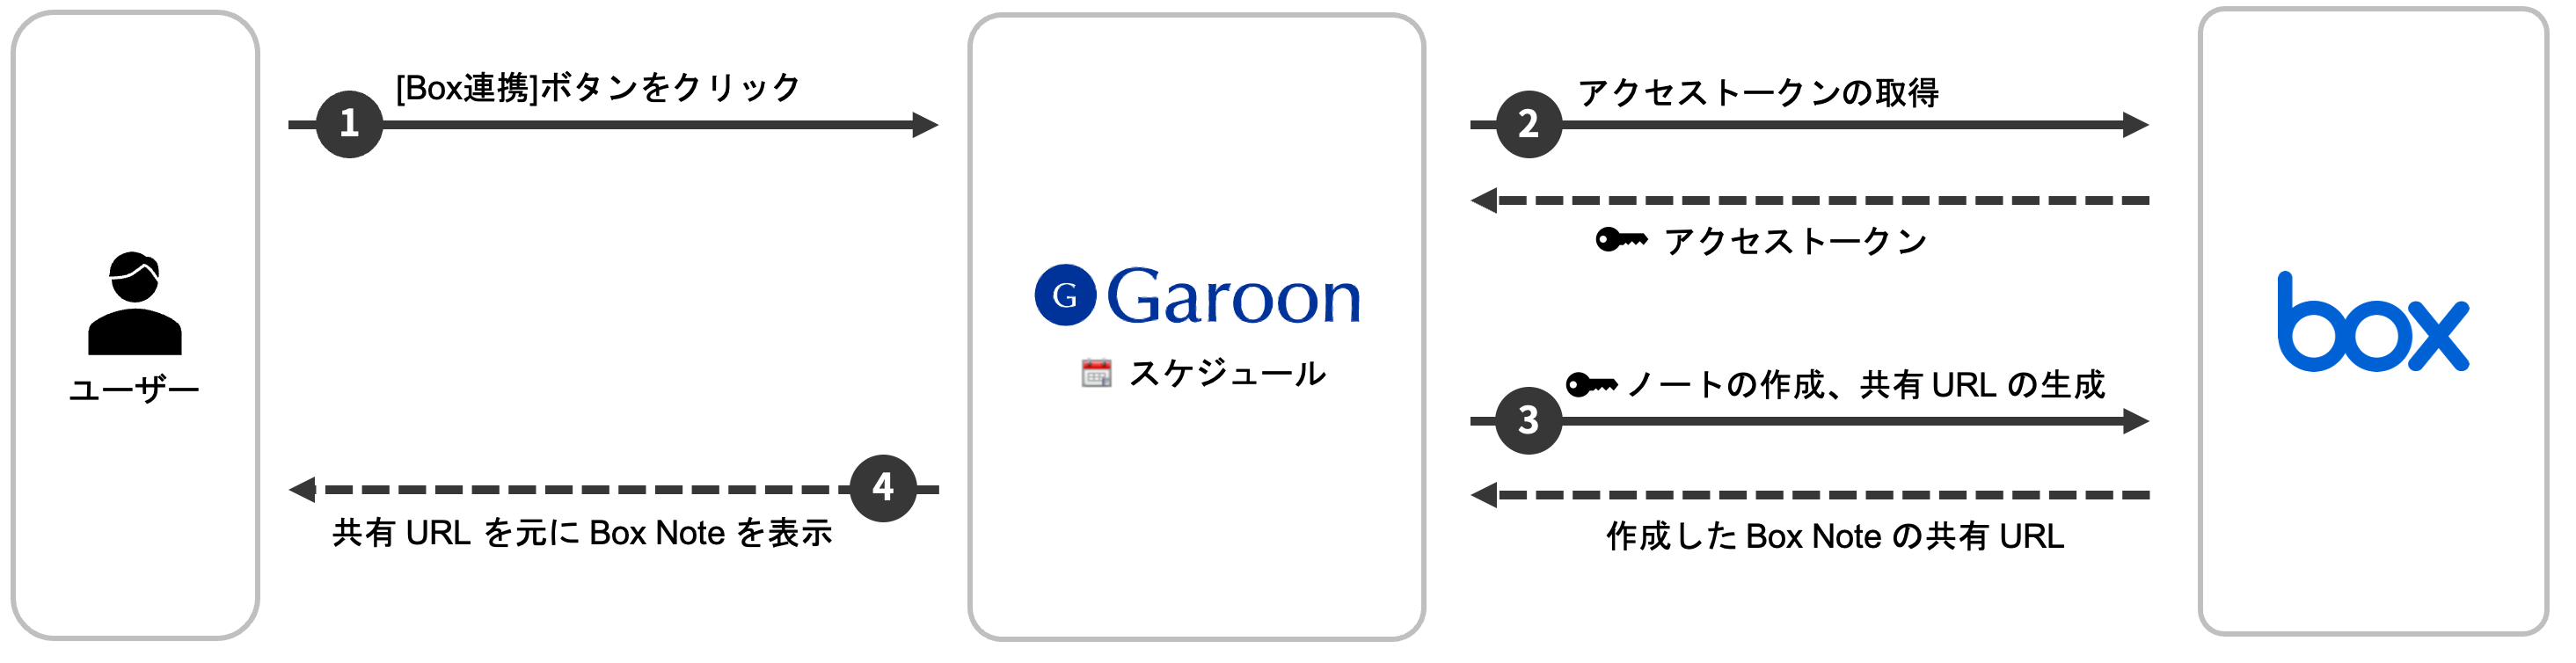 Garoon と Box の関係